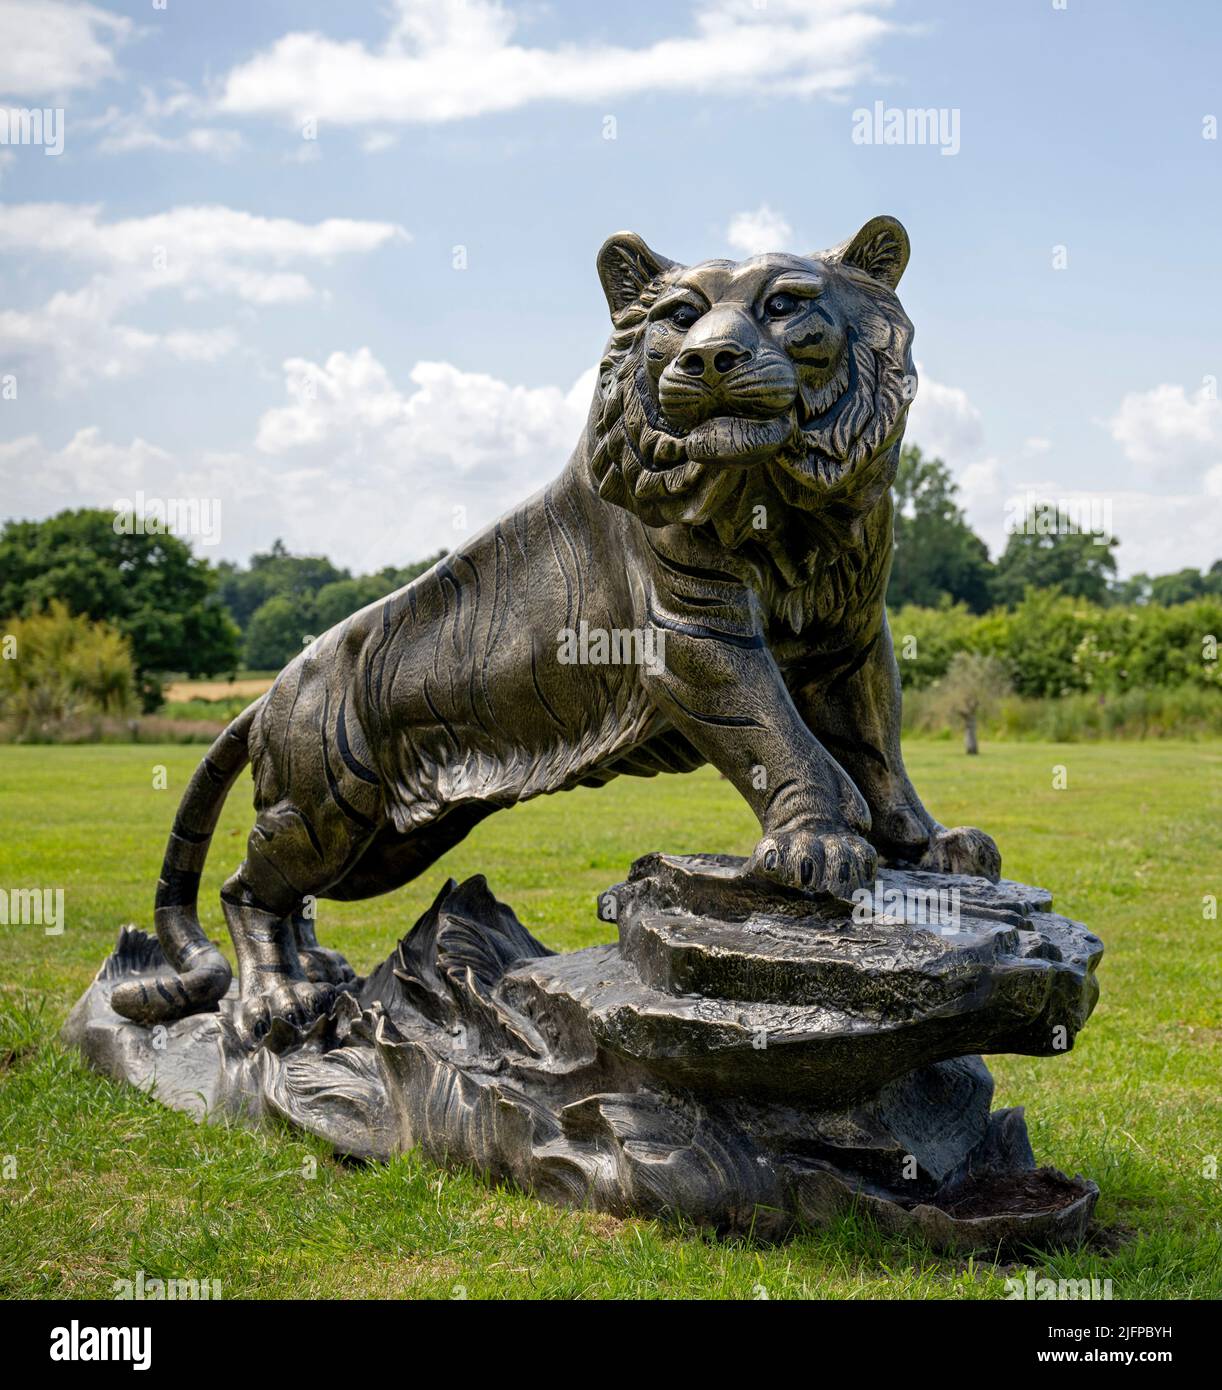 El Centro Británico de Hierro, Exhibición de Tigres/Escultura Foto de stock